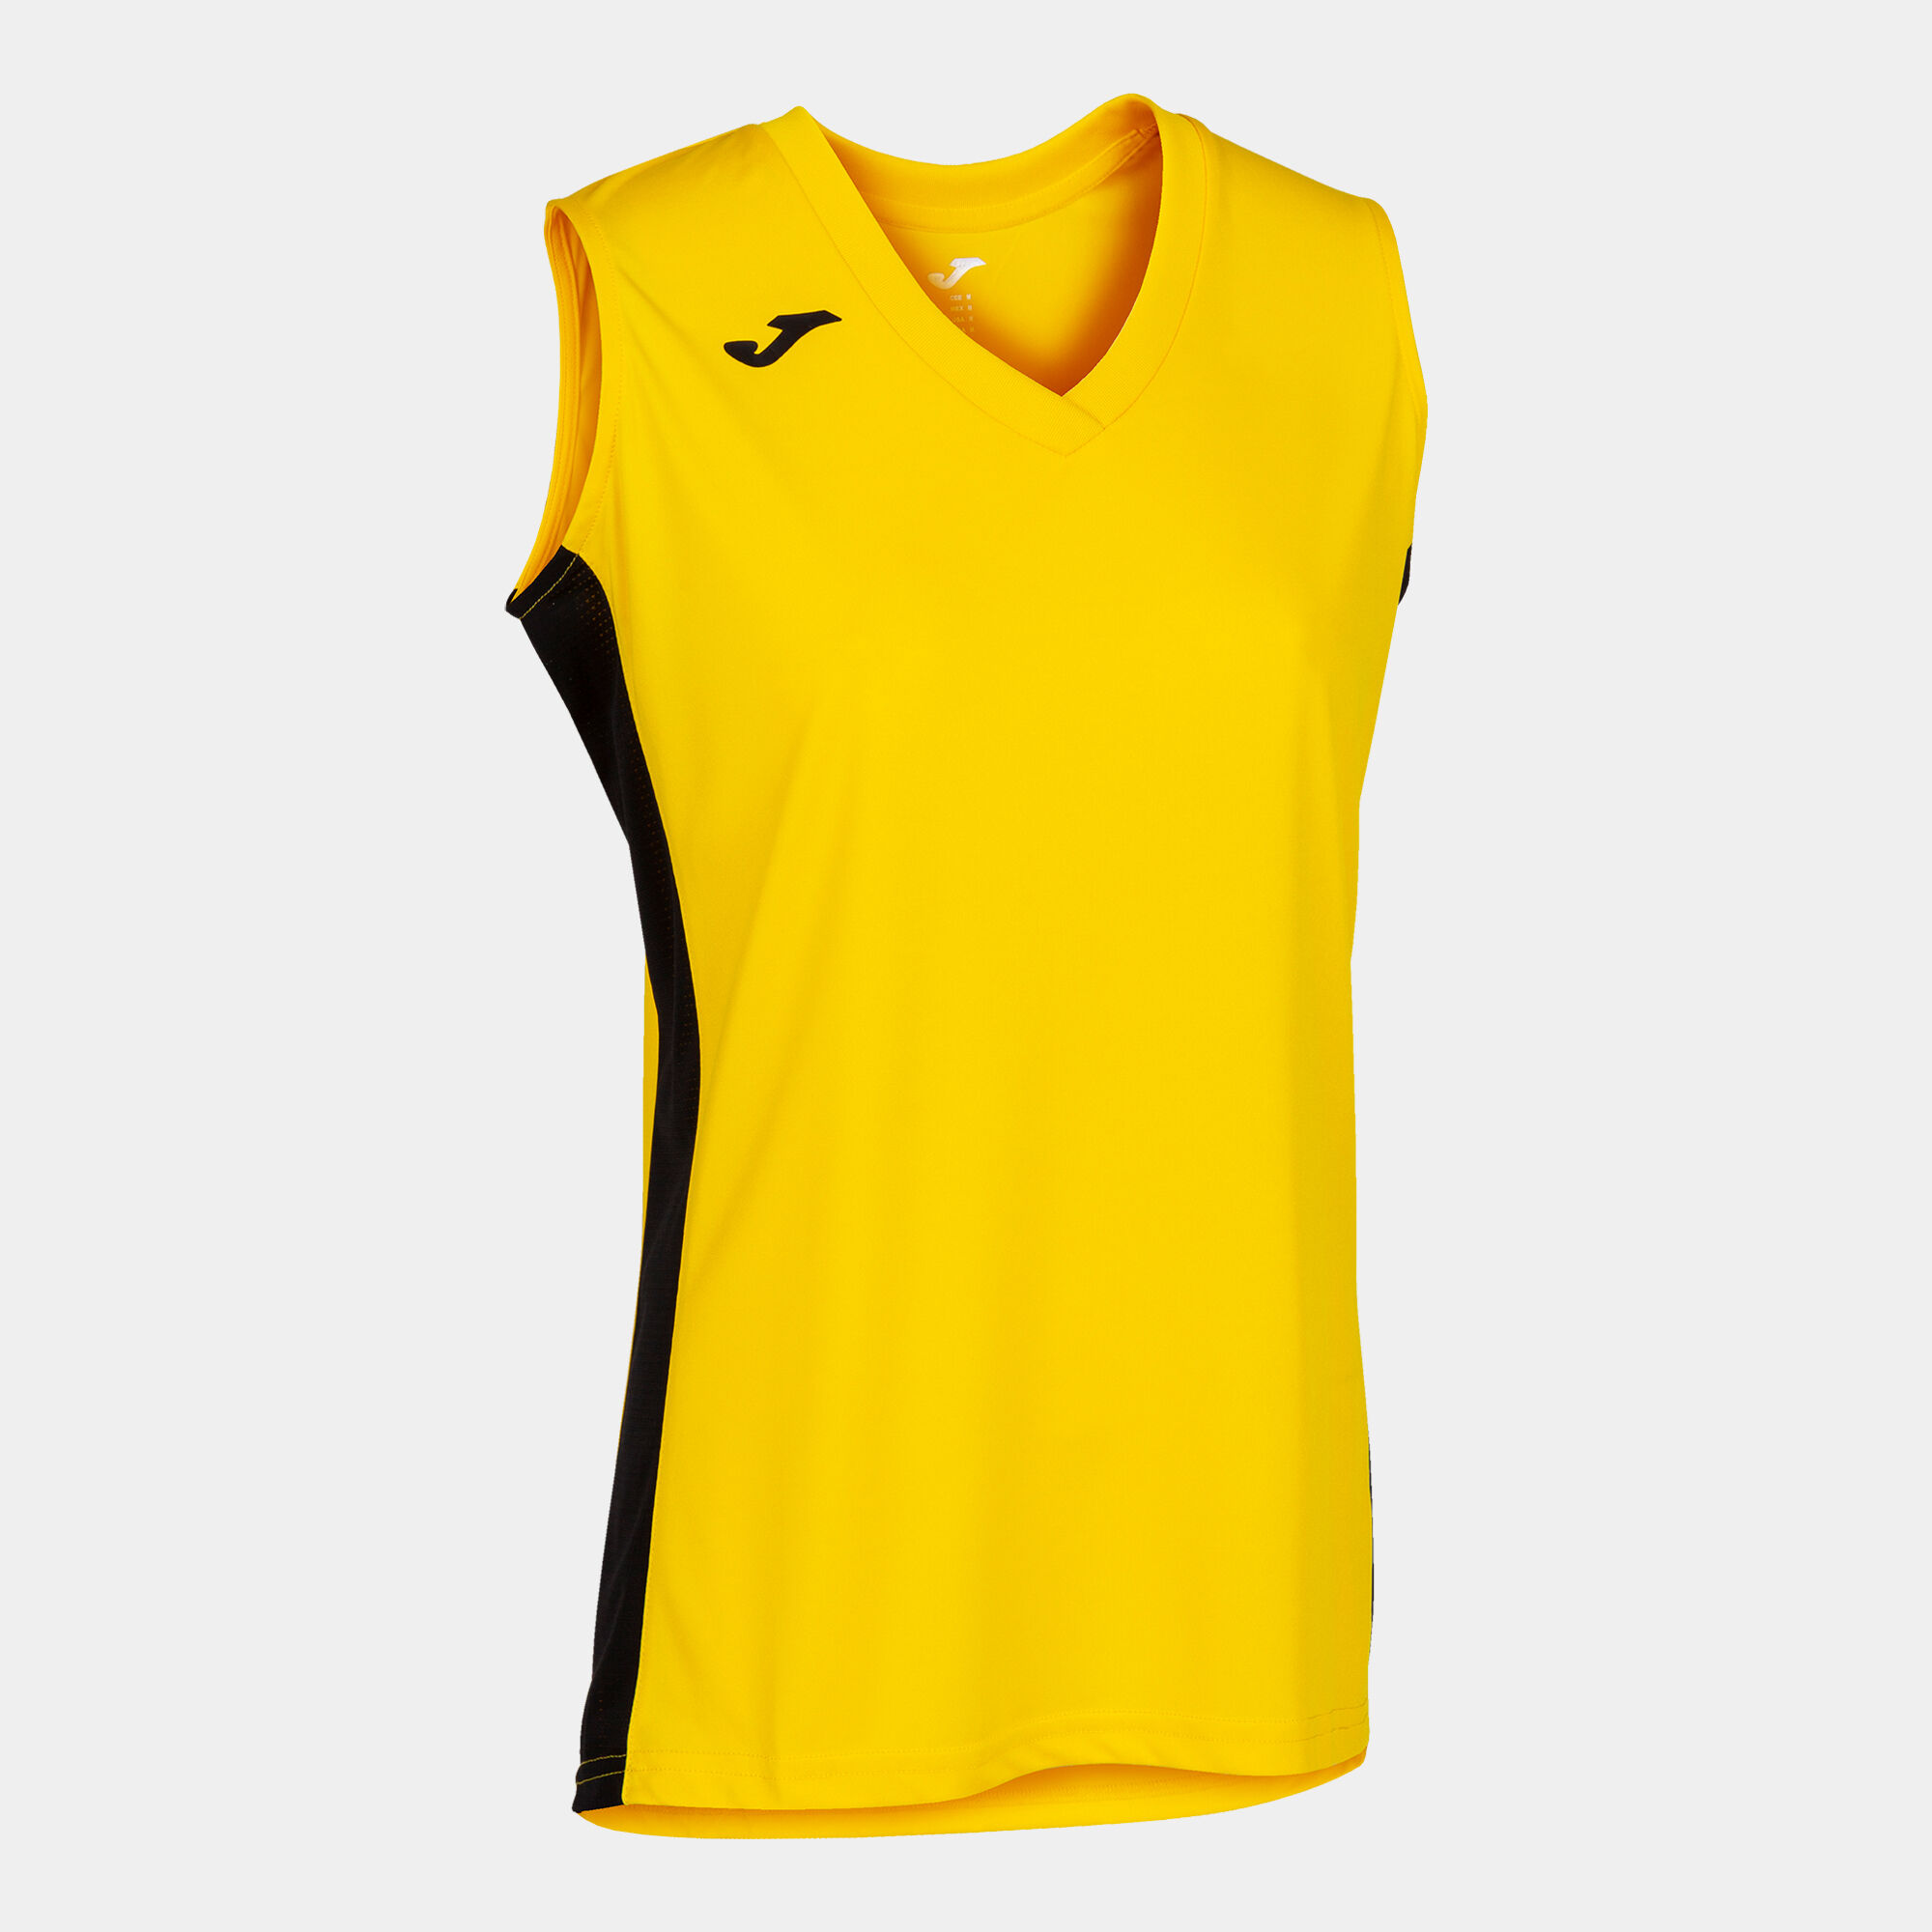 Shirt s/m frau Cancha III gelb schwarz